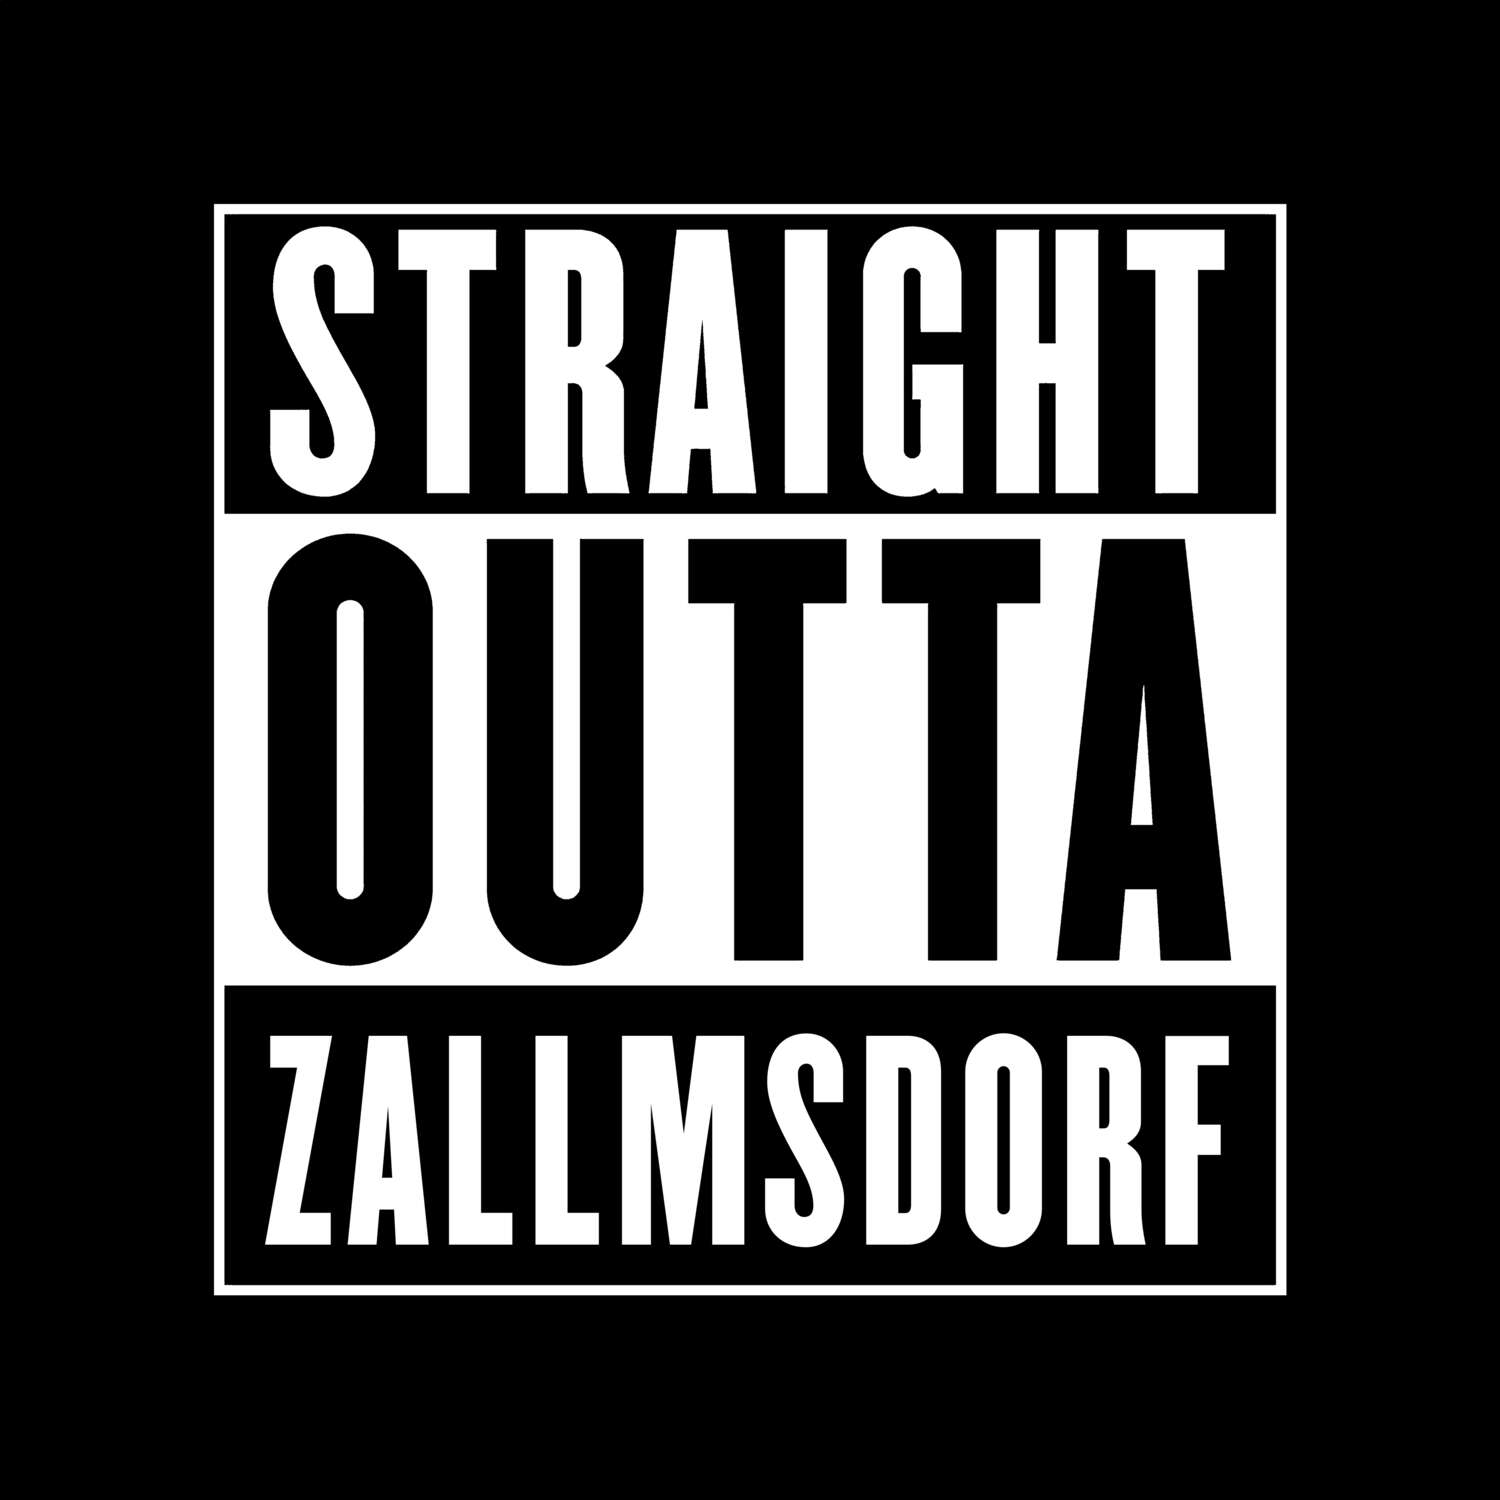 Zallmsdorf T-Shirt »Straight Outta«